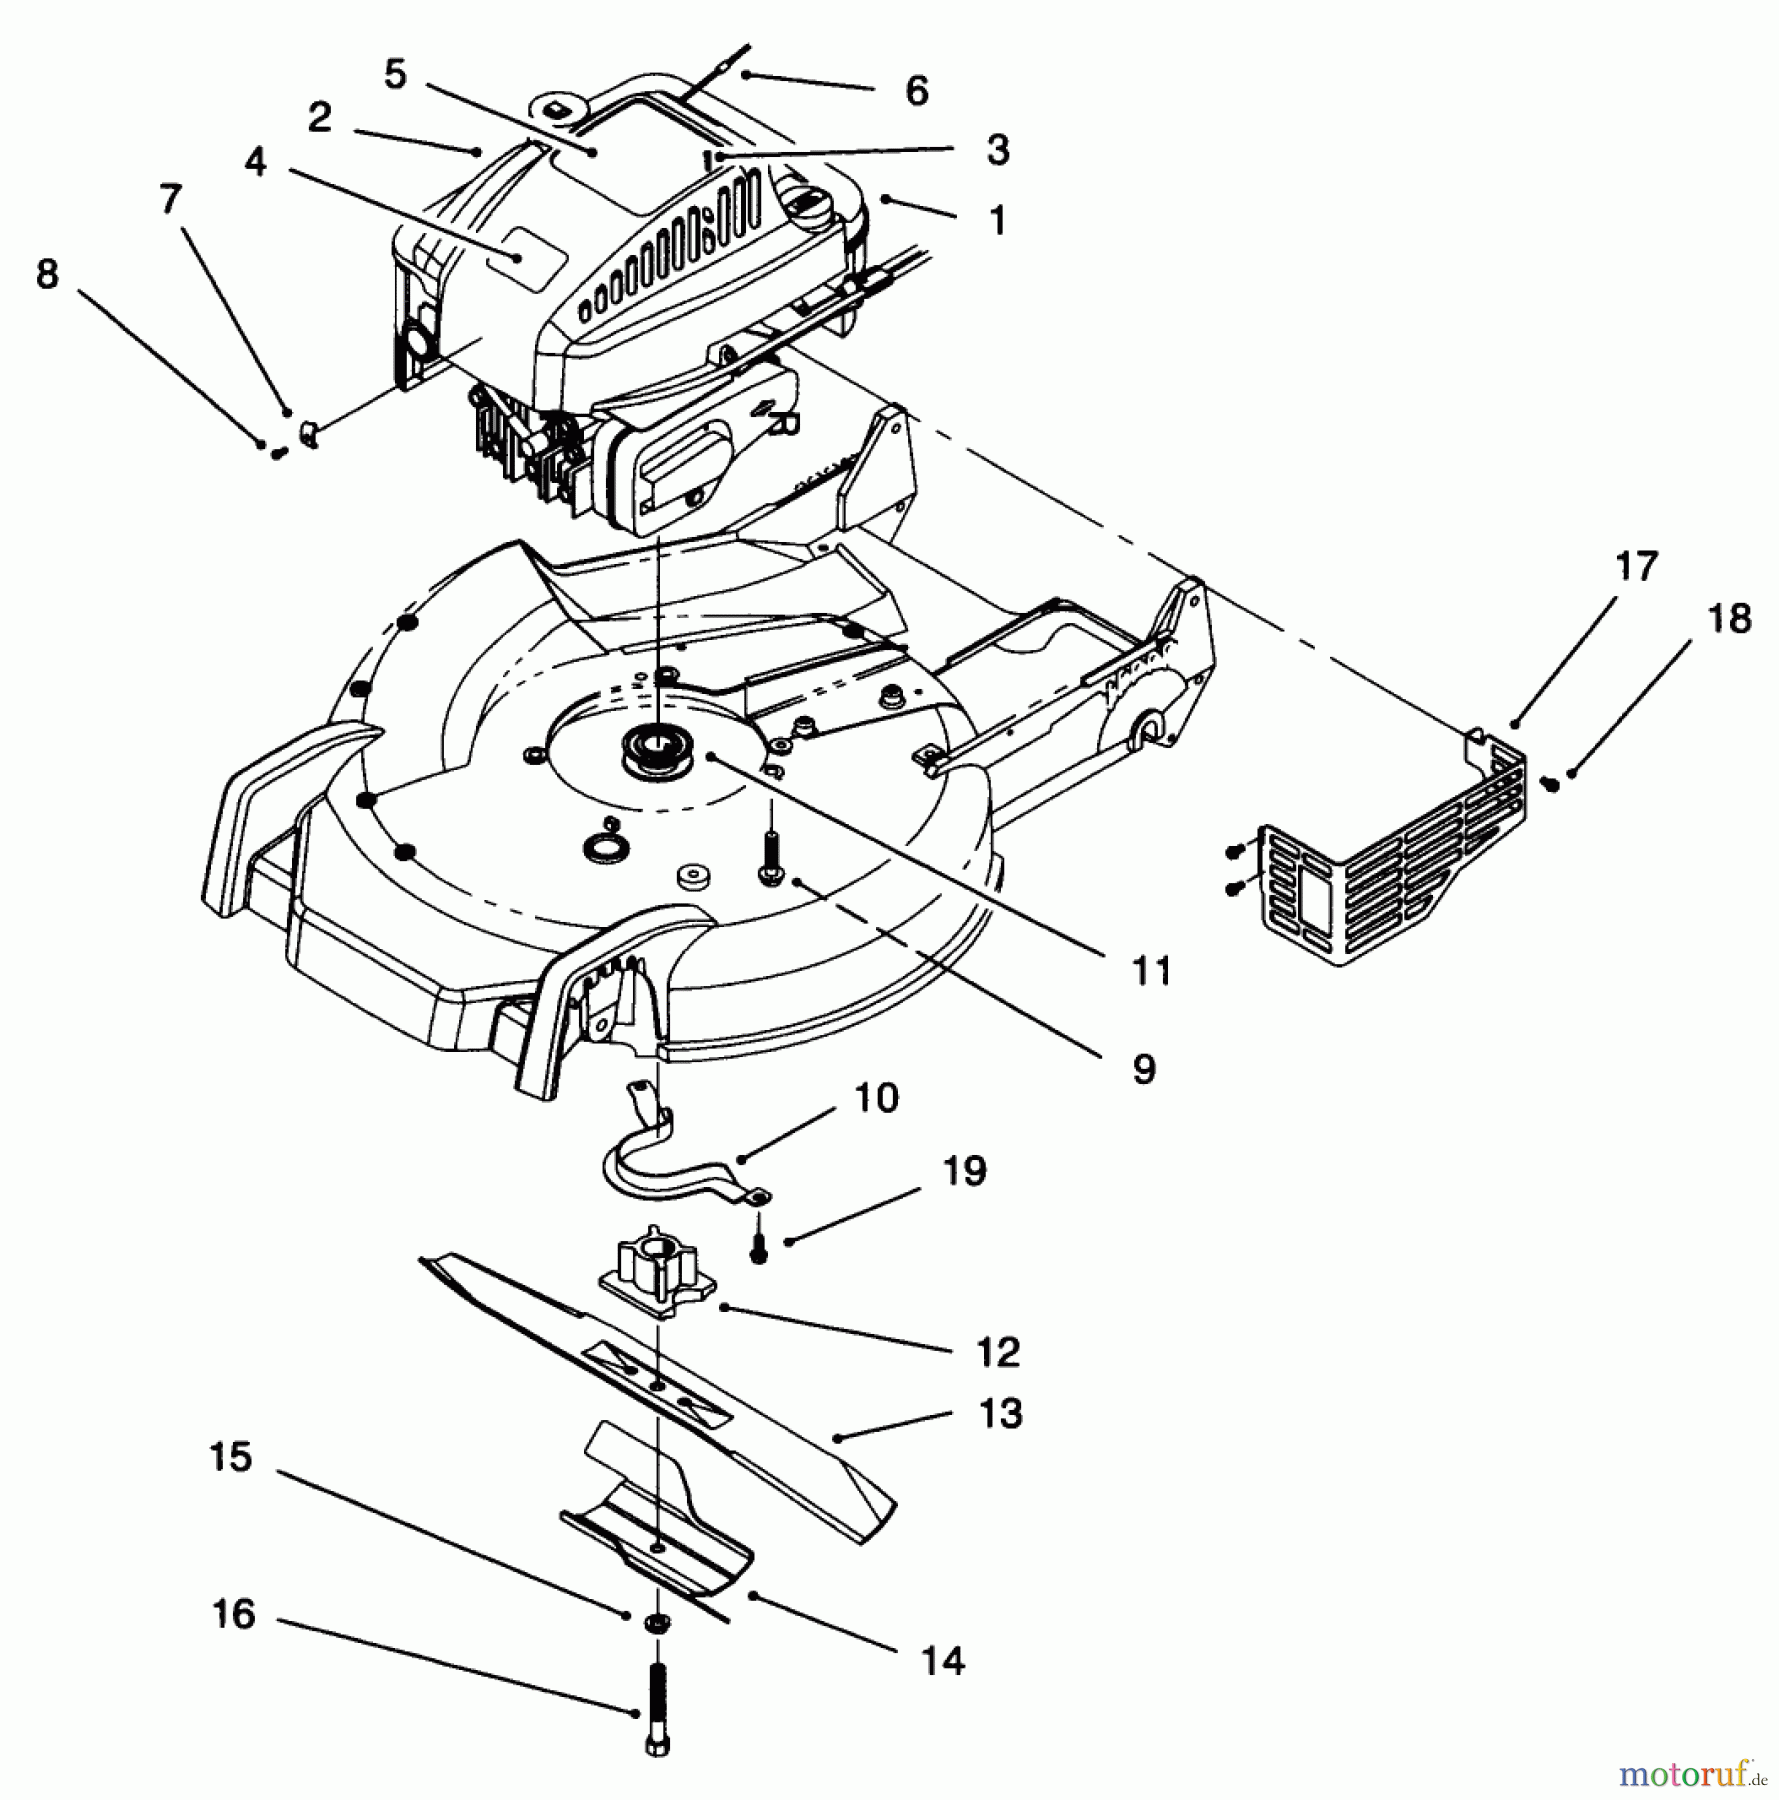  Toro Neu Mowers, Walk-Behind Seite 1 20473 - Toro Super Recycler Lawnmower, 1996 (6900001-6999999) ENGINE ASSEMBLY